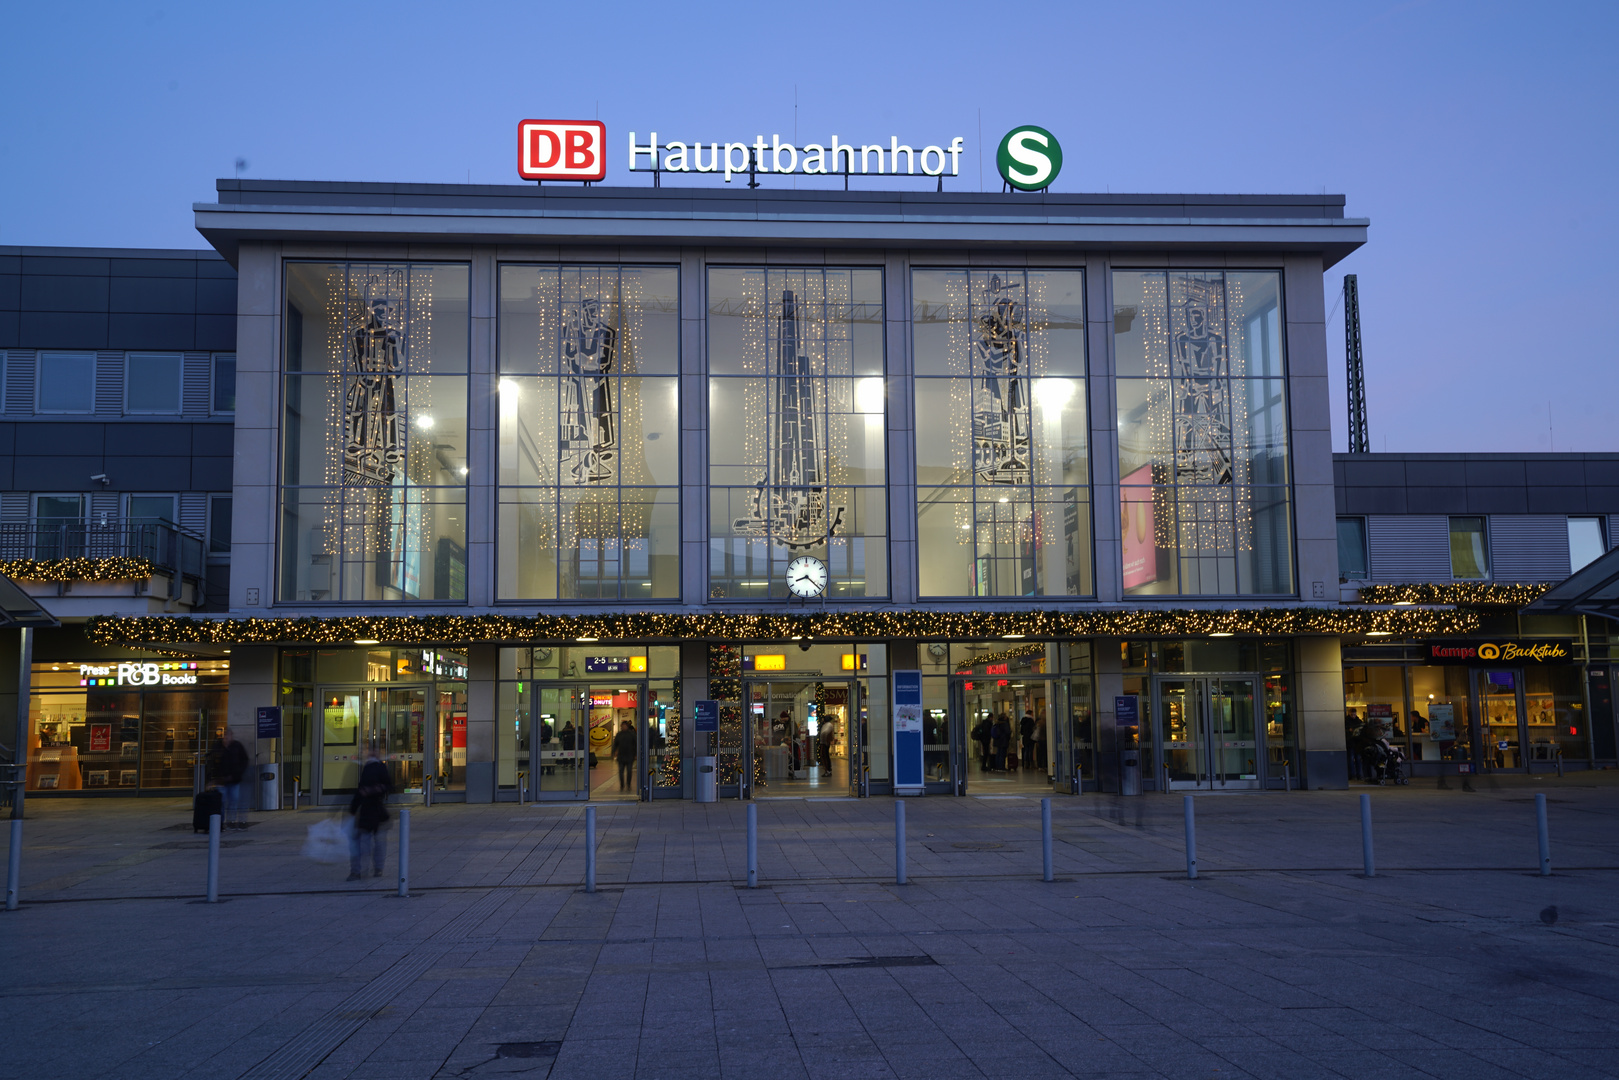 Dortmund Hauptbahnhof